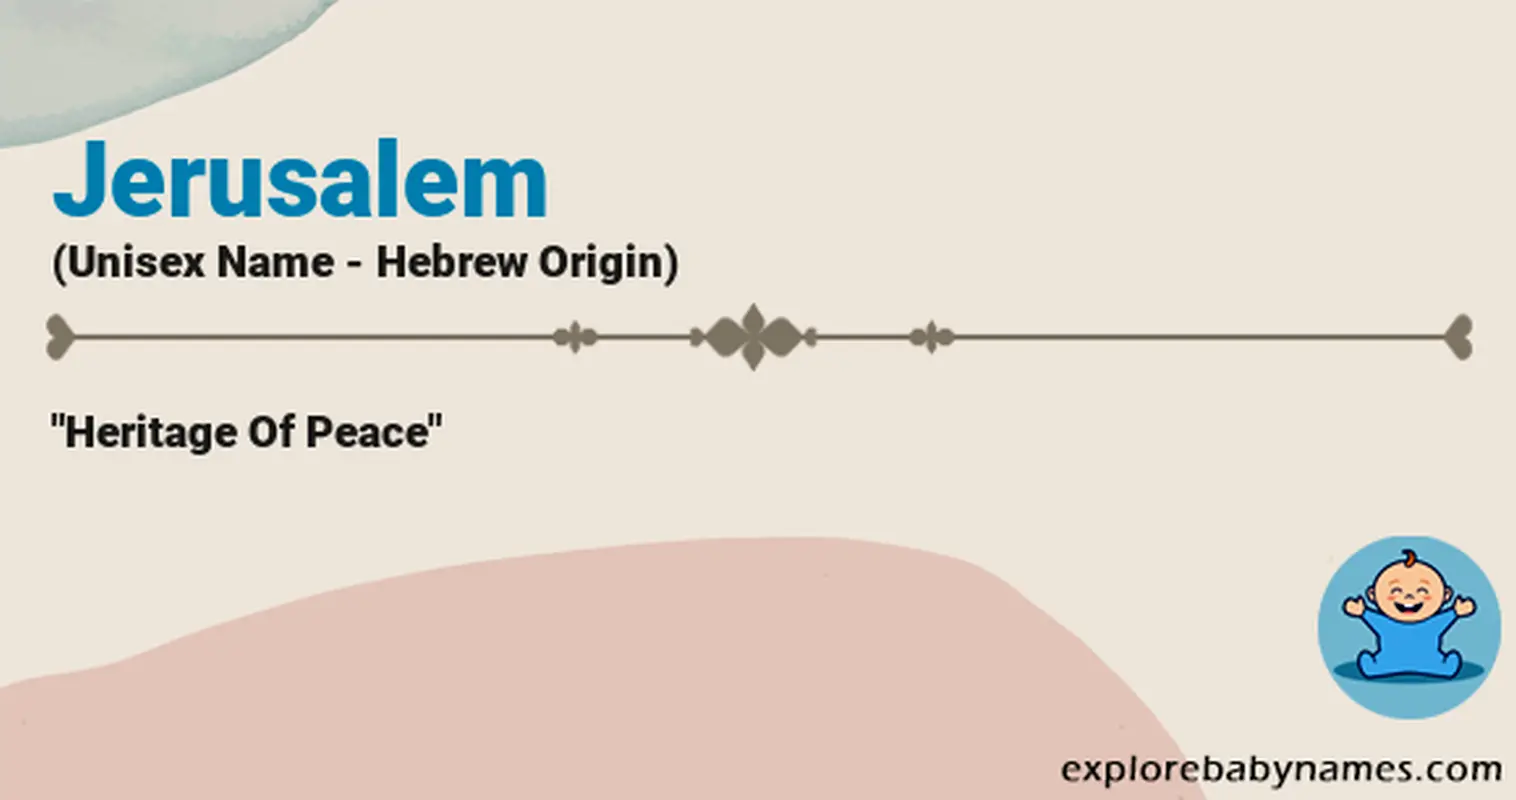 Meaning of Jerusalem